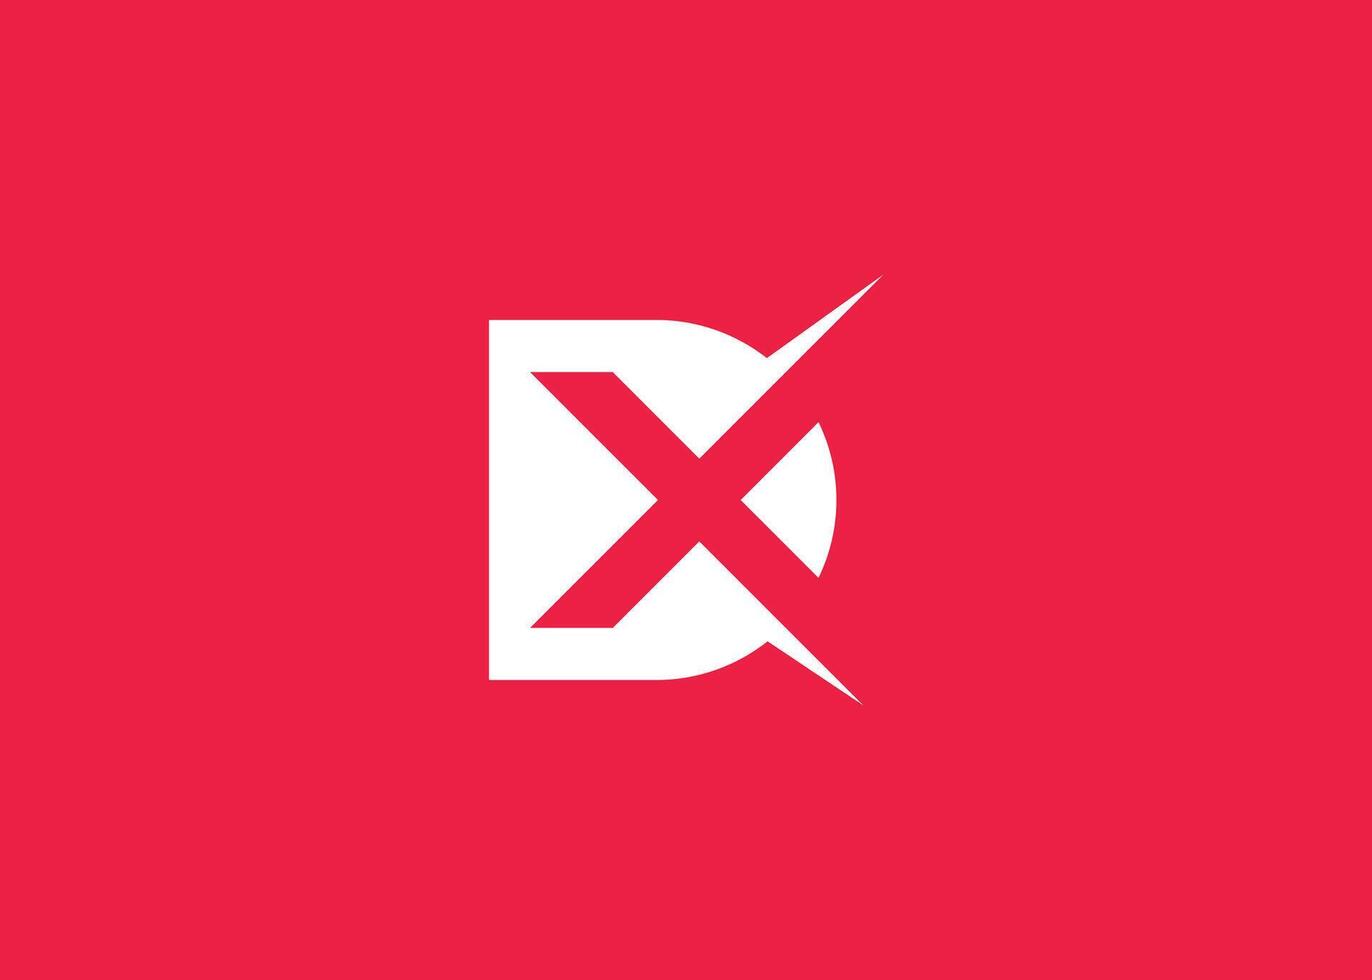 Letter D X monogram logo design vector template